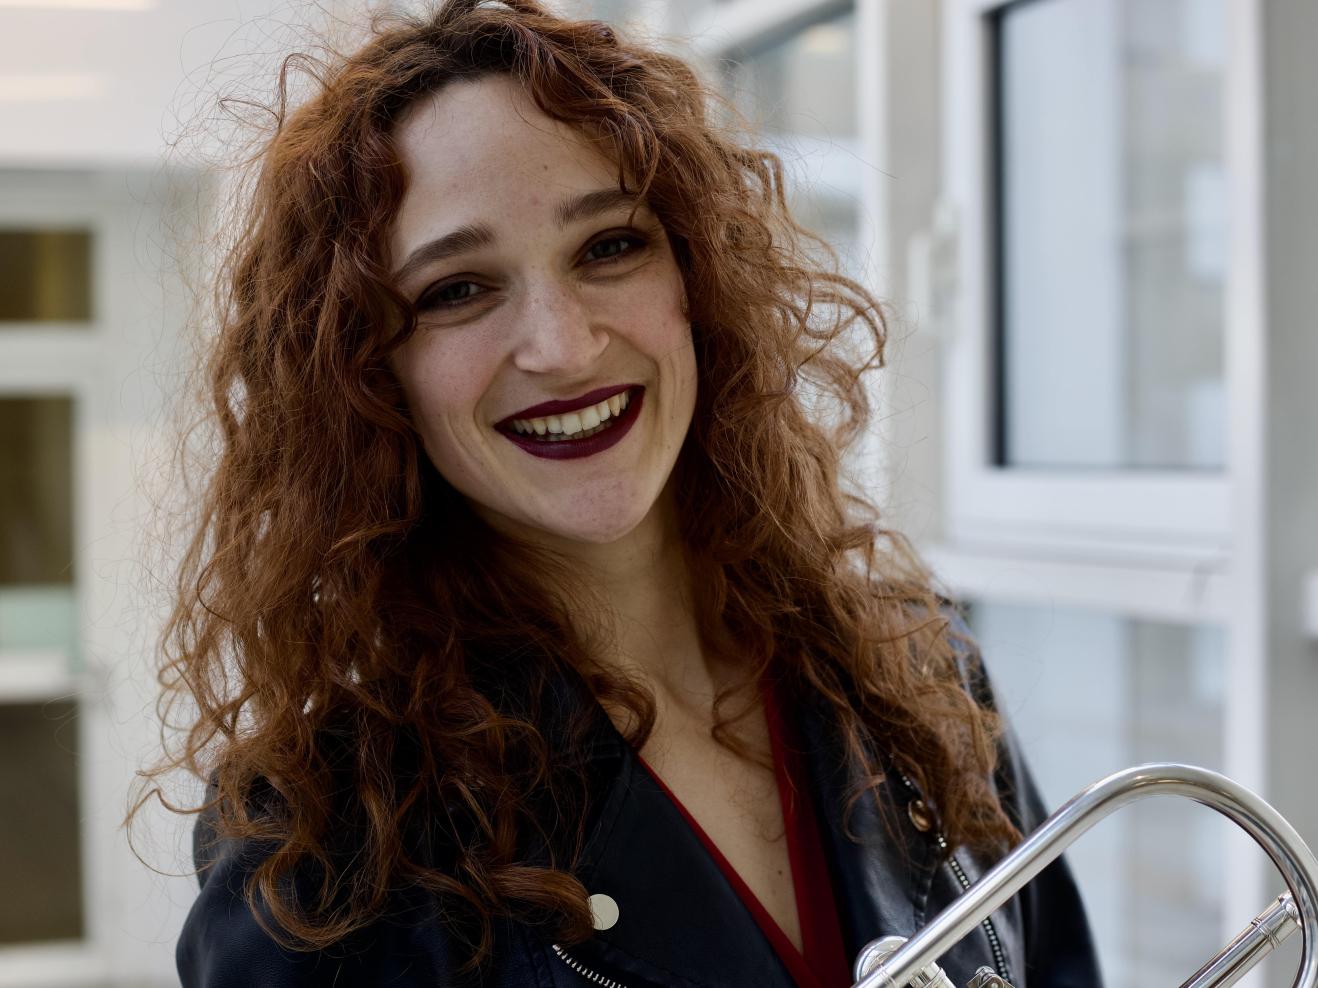 Portrait von Ines Hartmuth: Sie hat rotbraune Locken und lacht in die Kamera. Im Arm hält sie ihre Trompete.